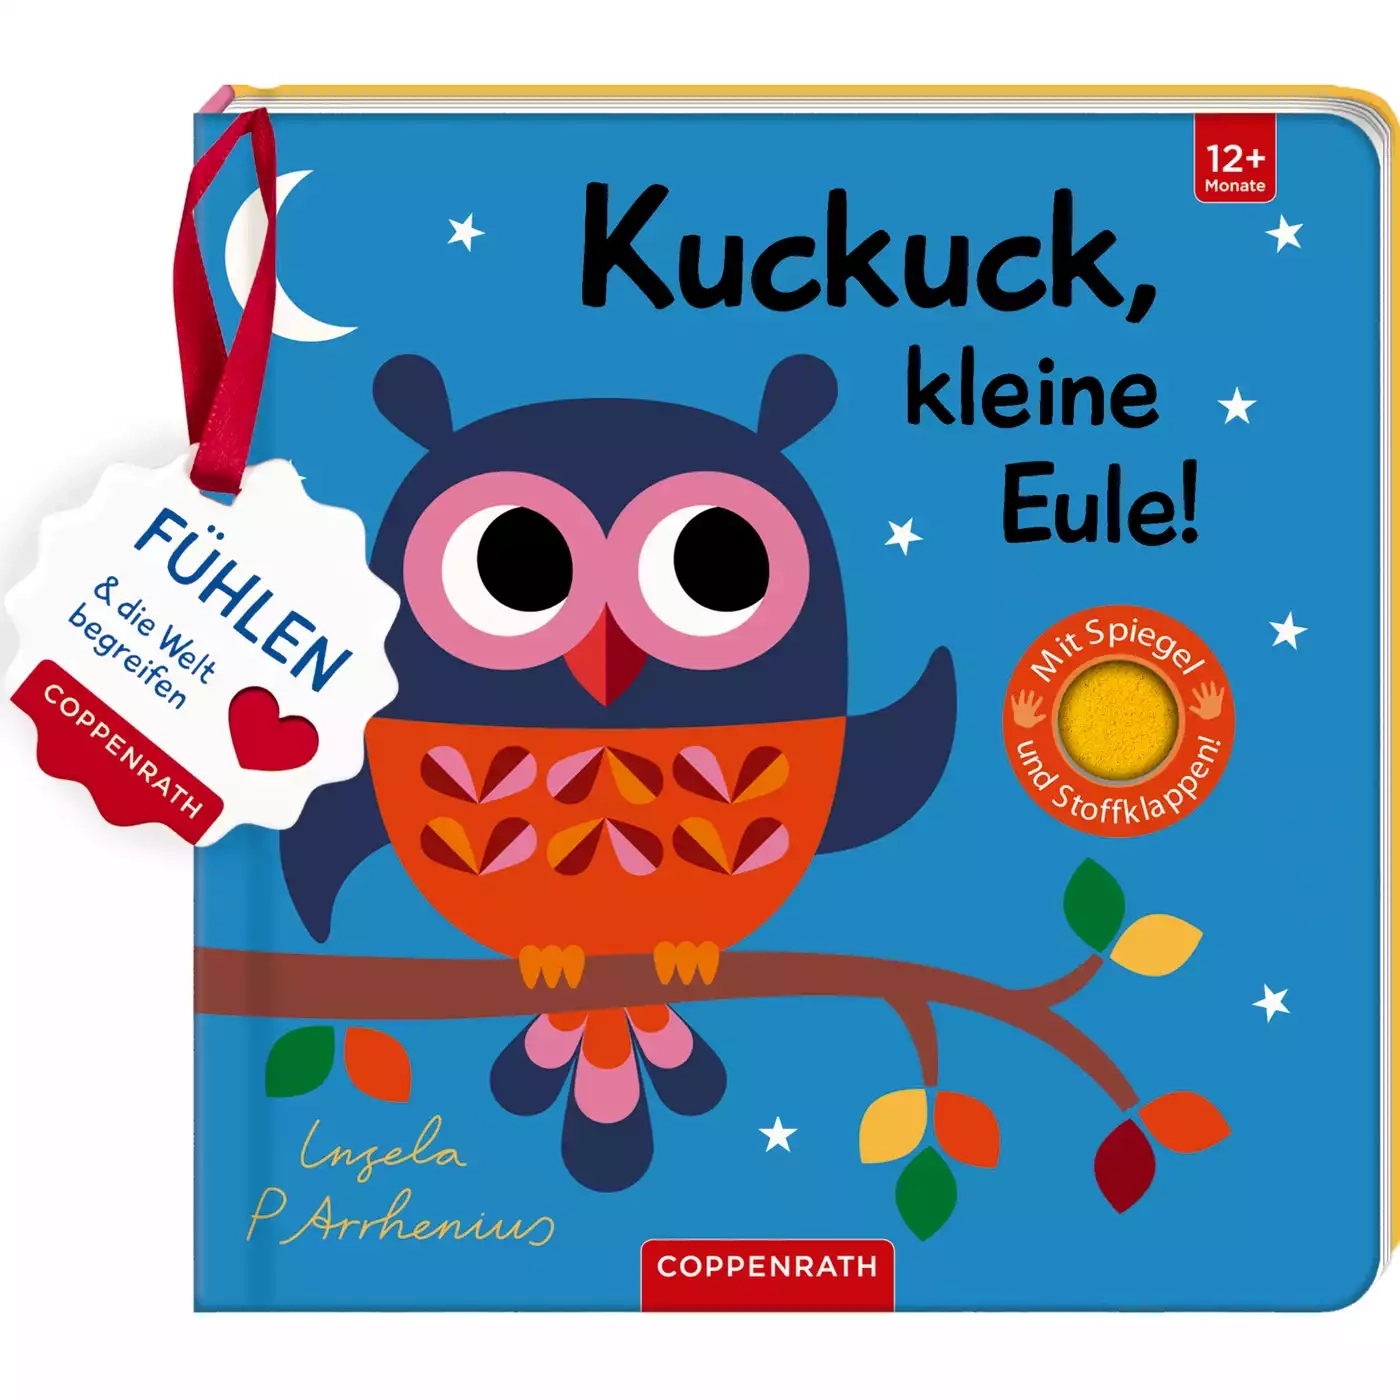 Kuckuck, kleine Eule! COPPENRATH 2000574906706 1